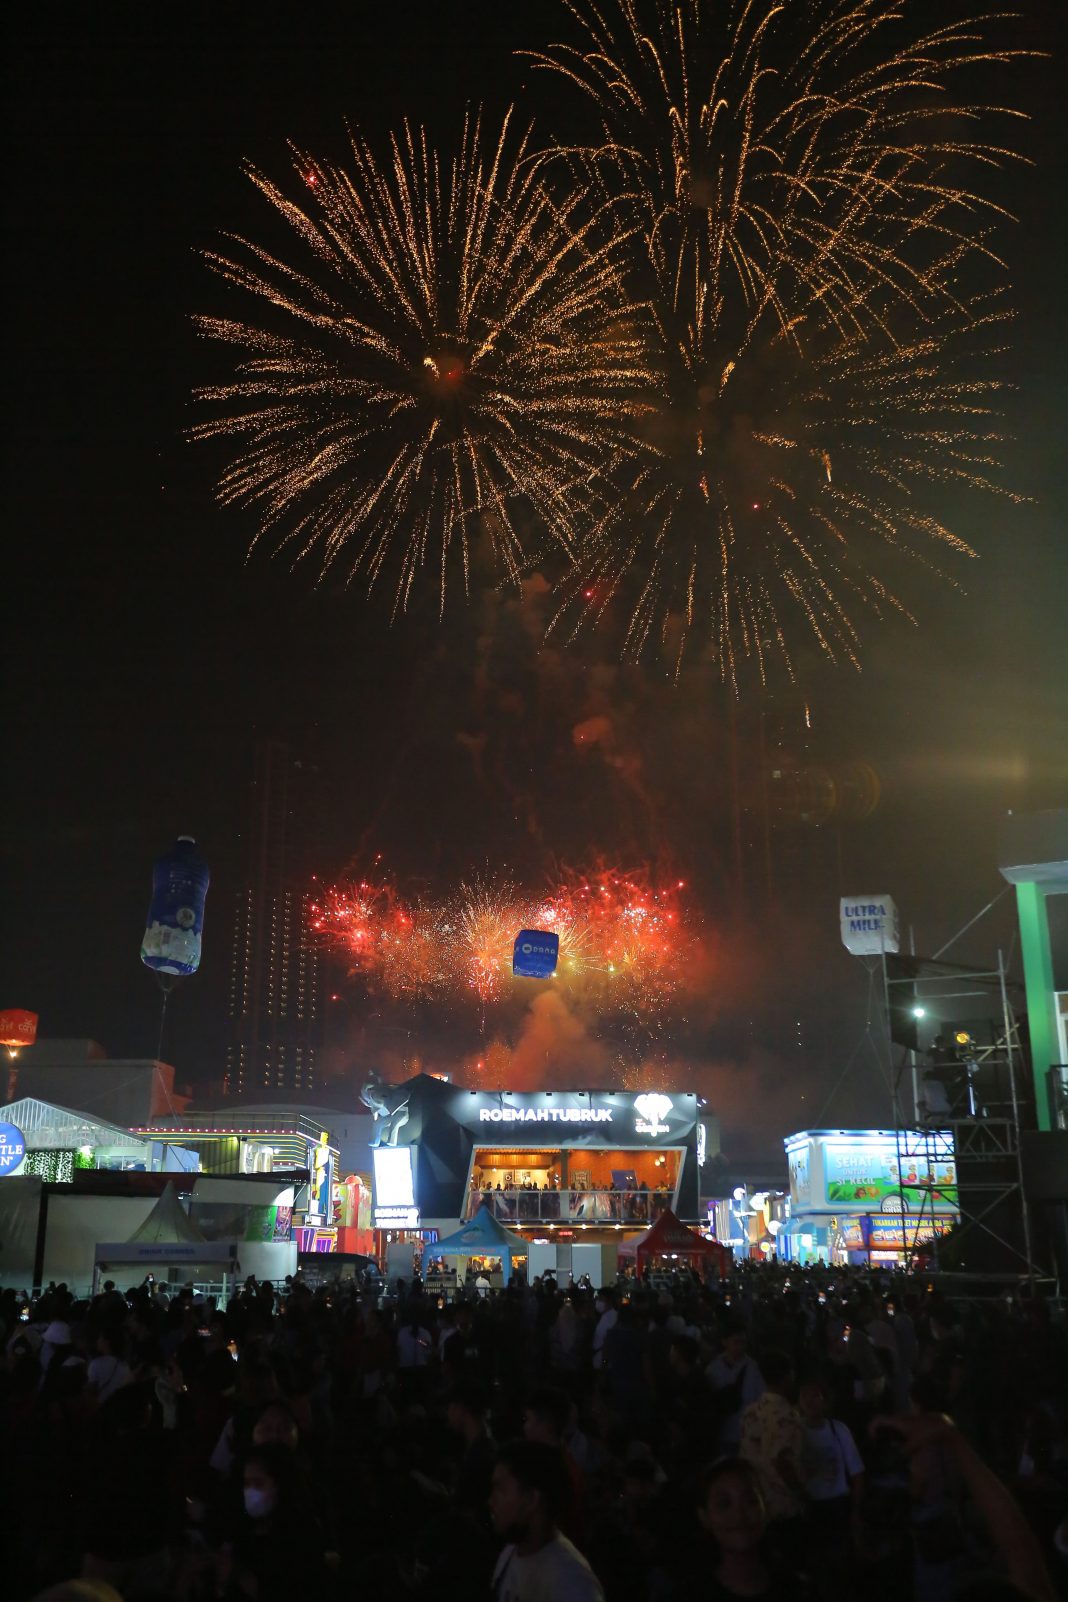 geotimes - Kemeriahan Malam Perayaan HUT DKI Jakarta di Jakarta Fair